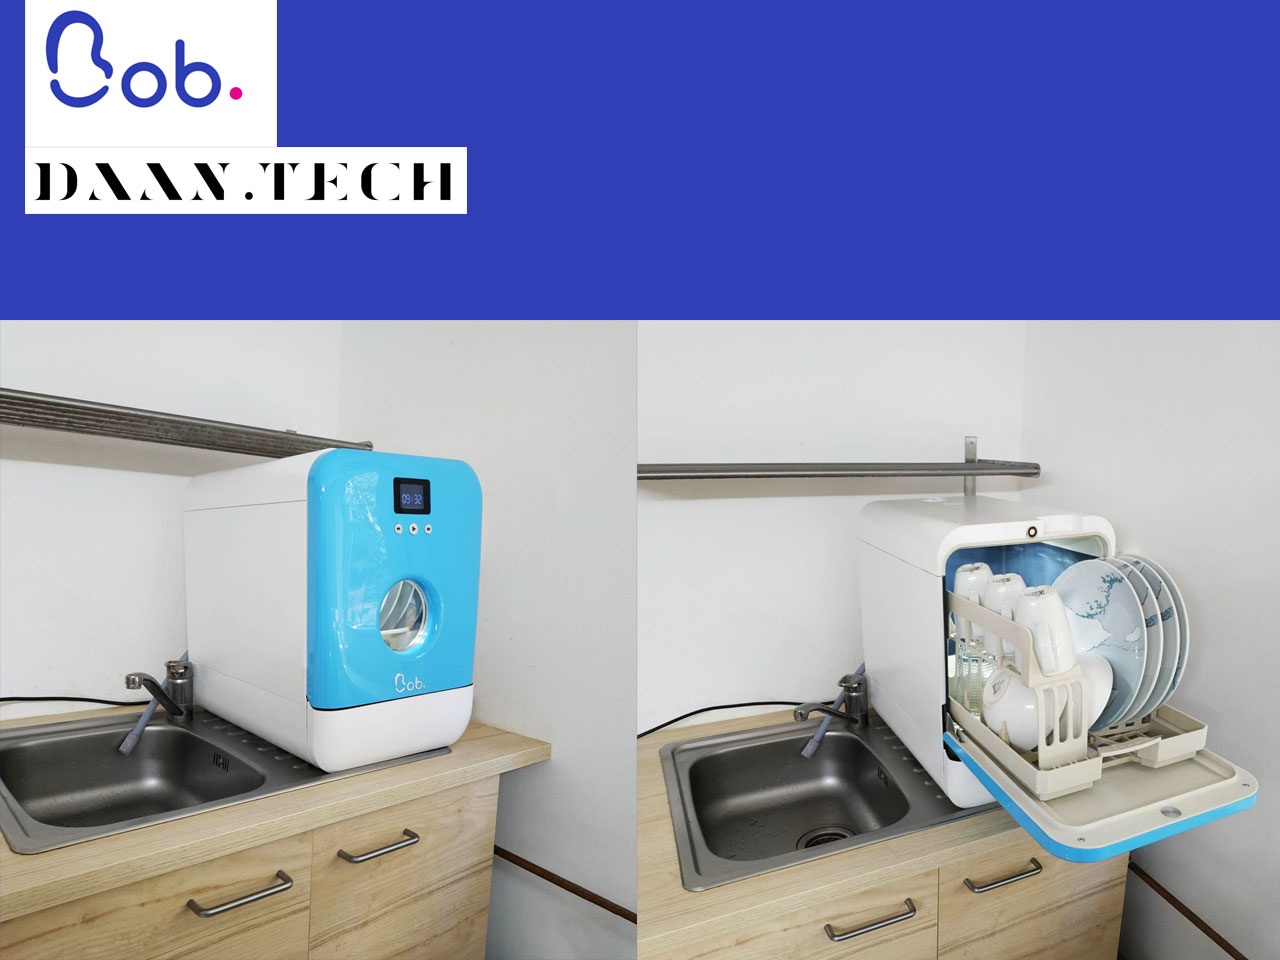 Bob le mini lave-vaisselle - DAAN.Tech - Marques de France